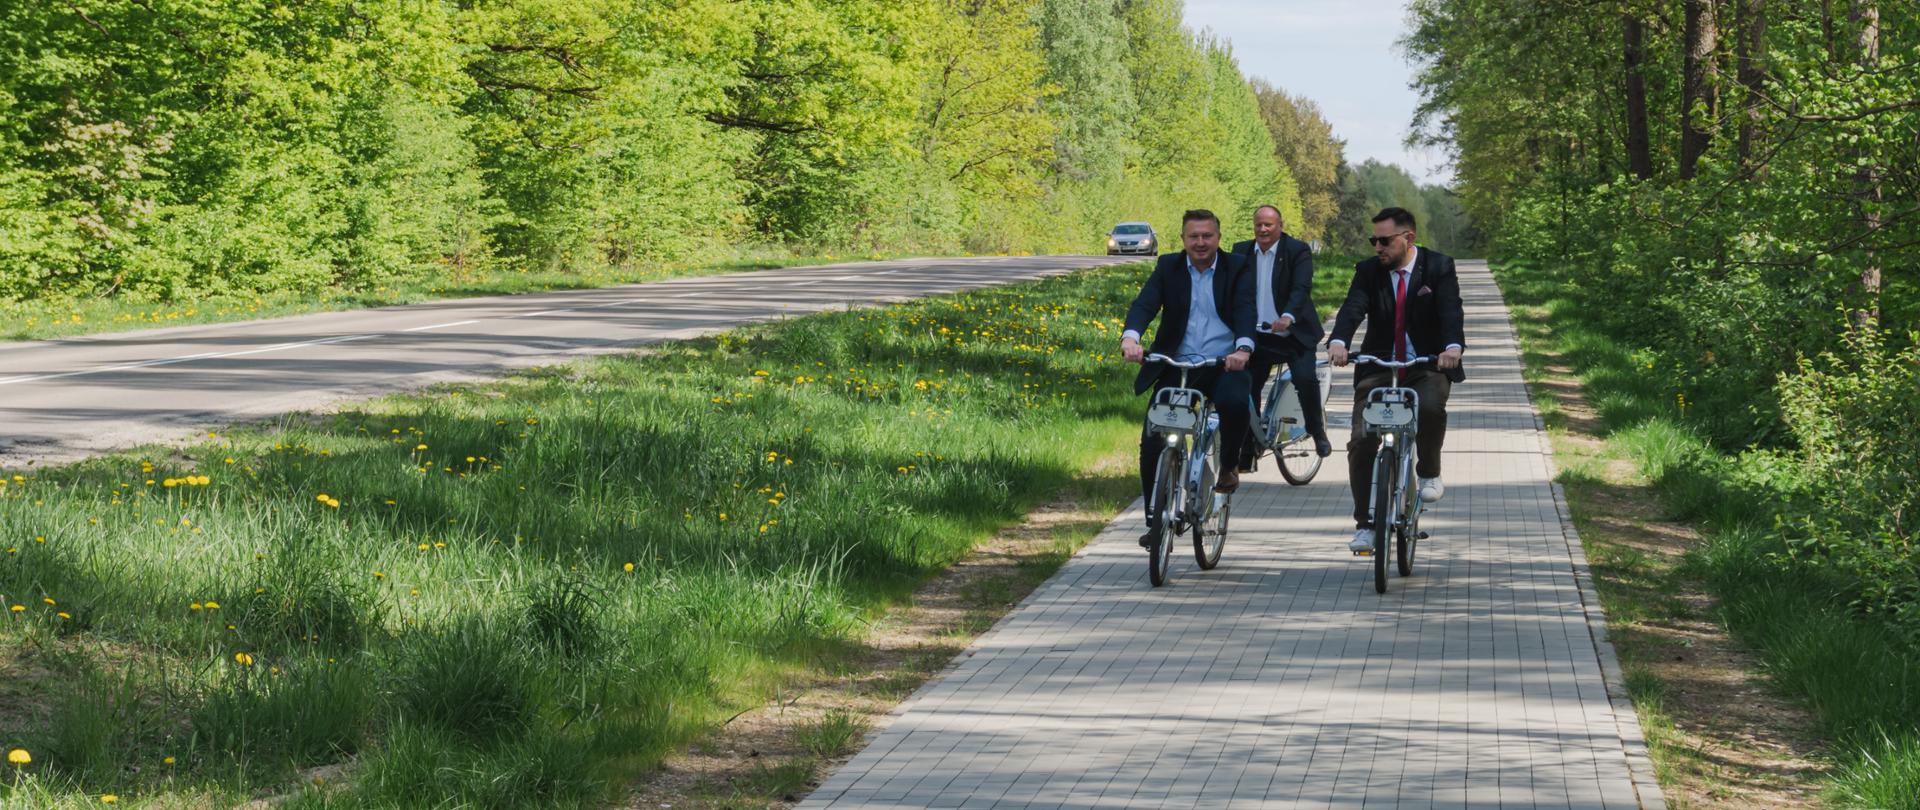 Otwarcie ścieżki pieszo-rowerowej z Białegostoku do Grabówki